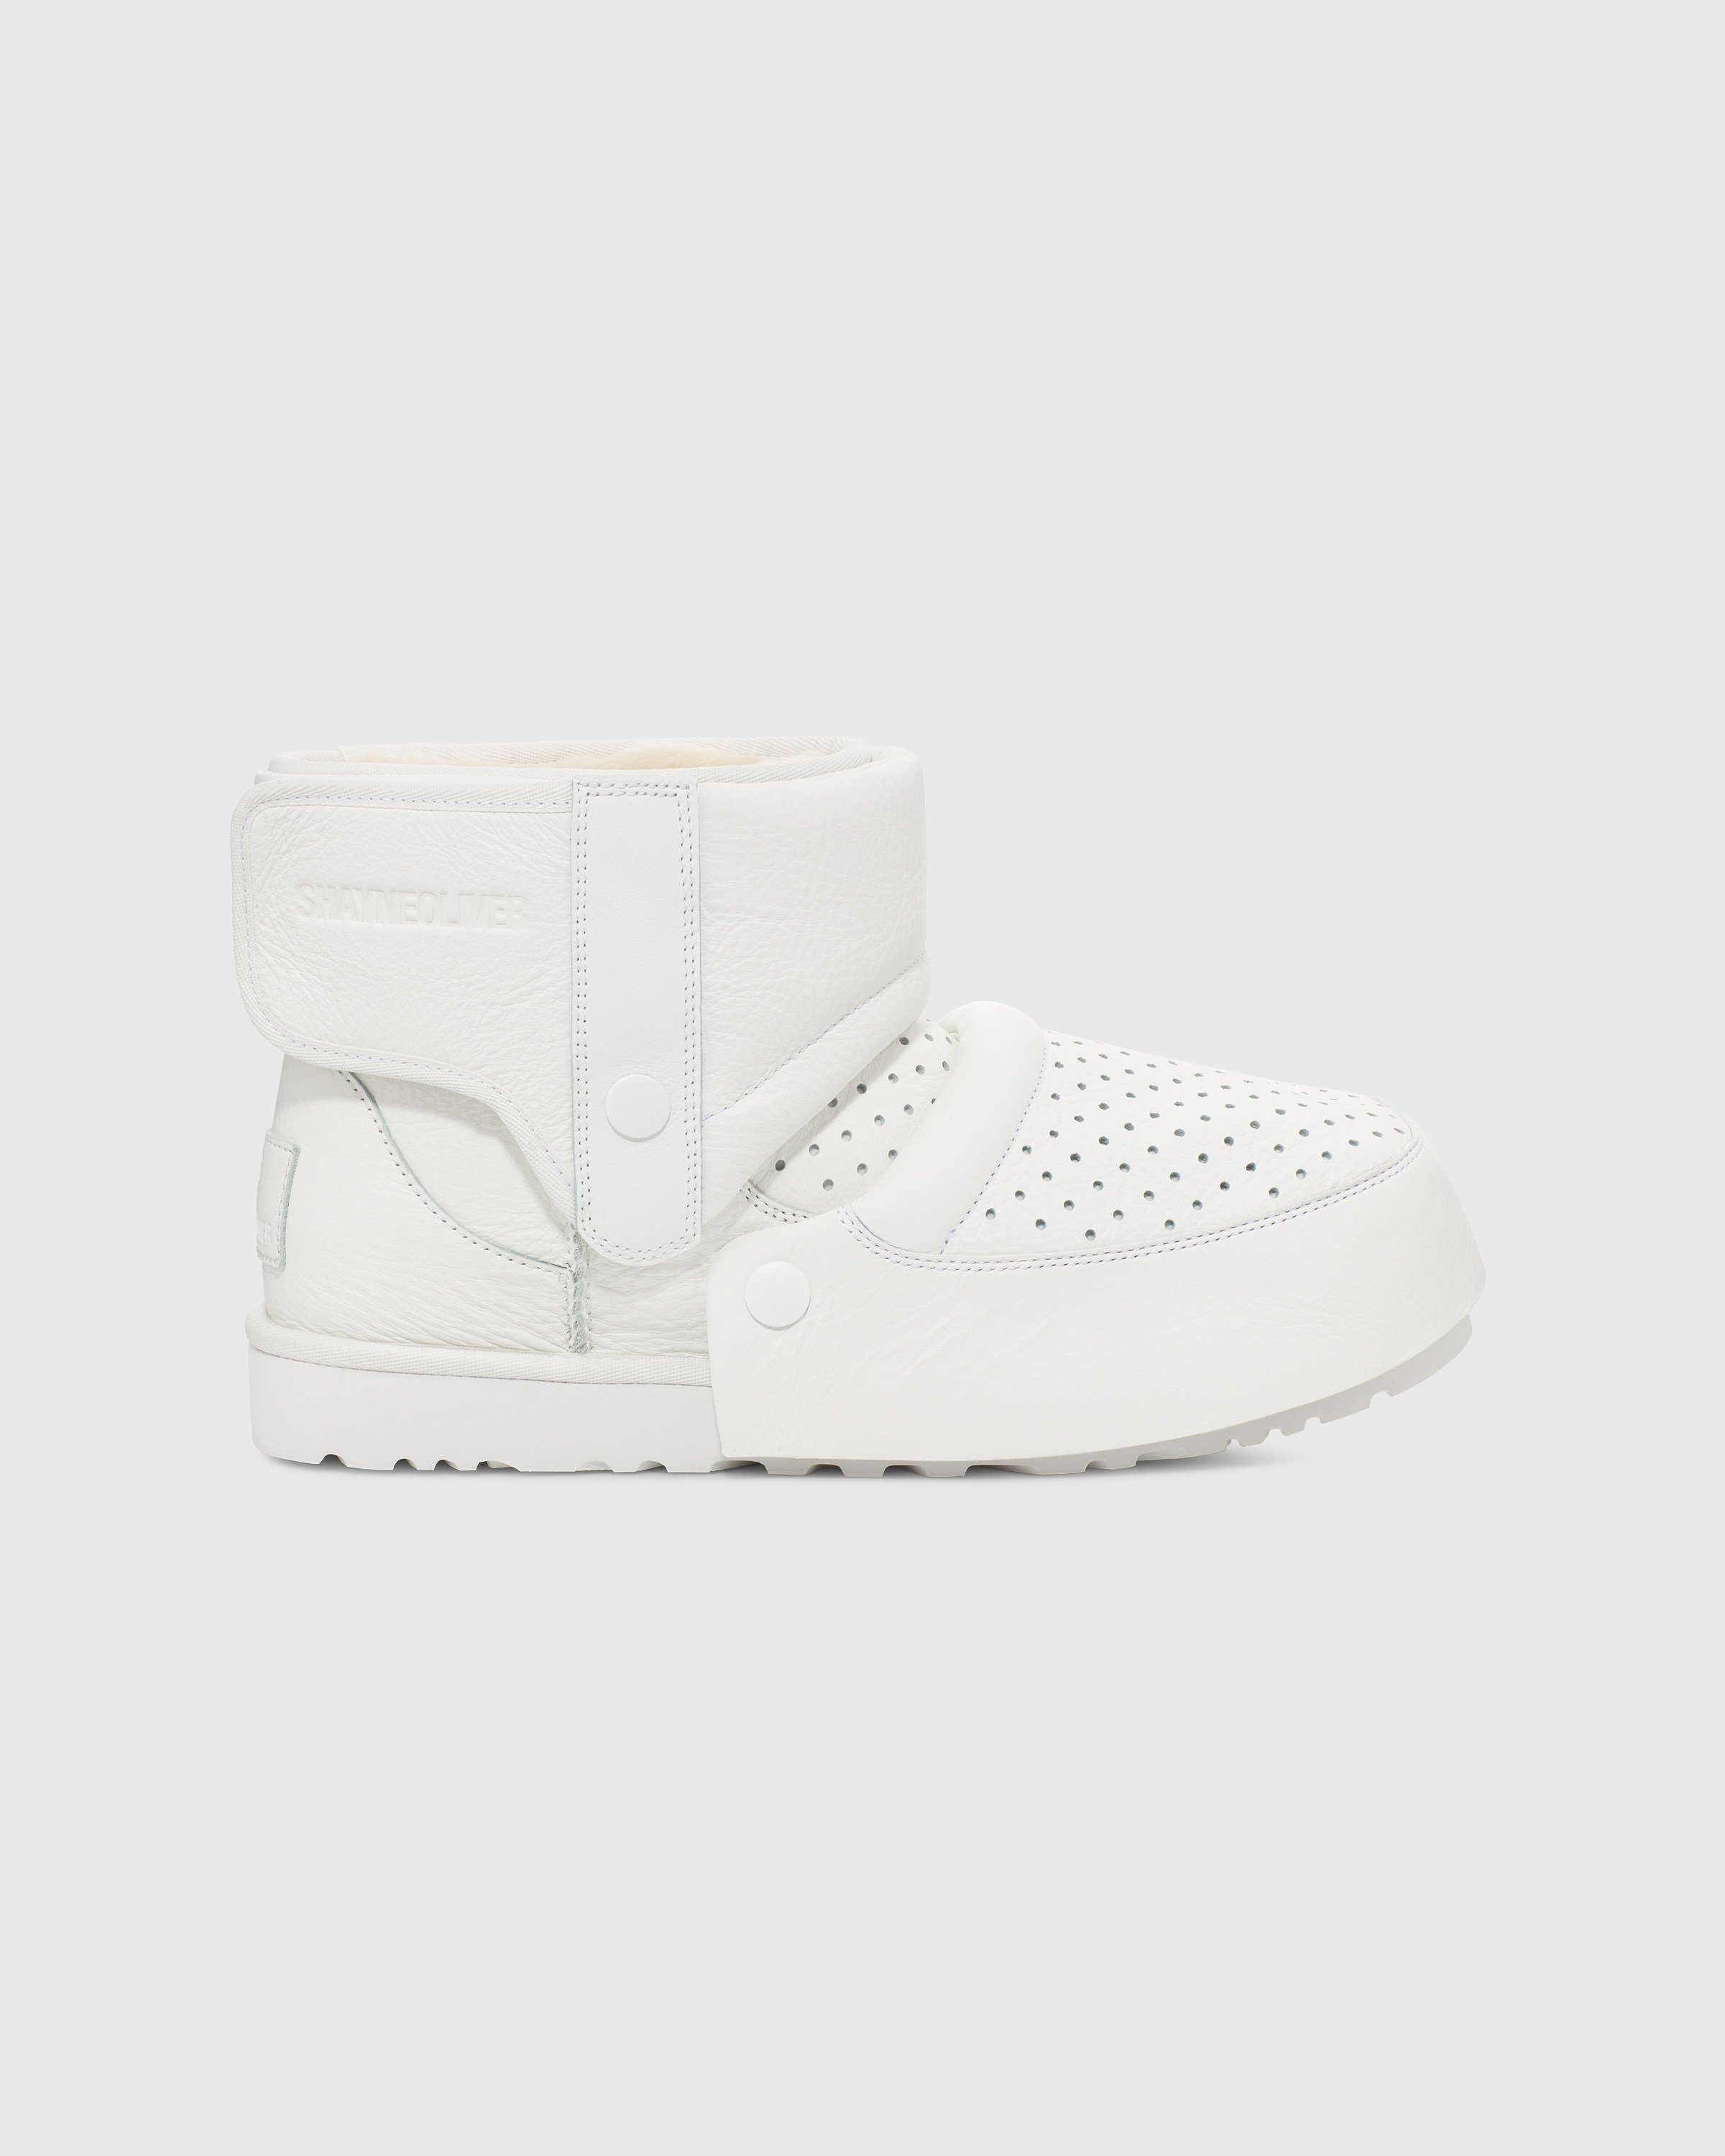 Ugg x Shayne Oliver - Mini Boot White - Footwear - White - Image 1